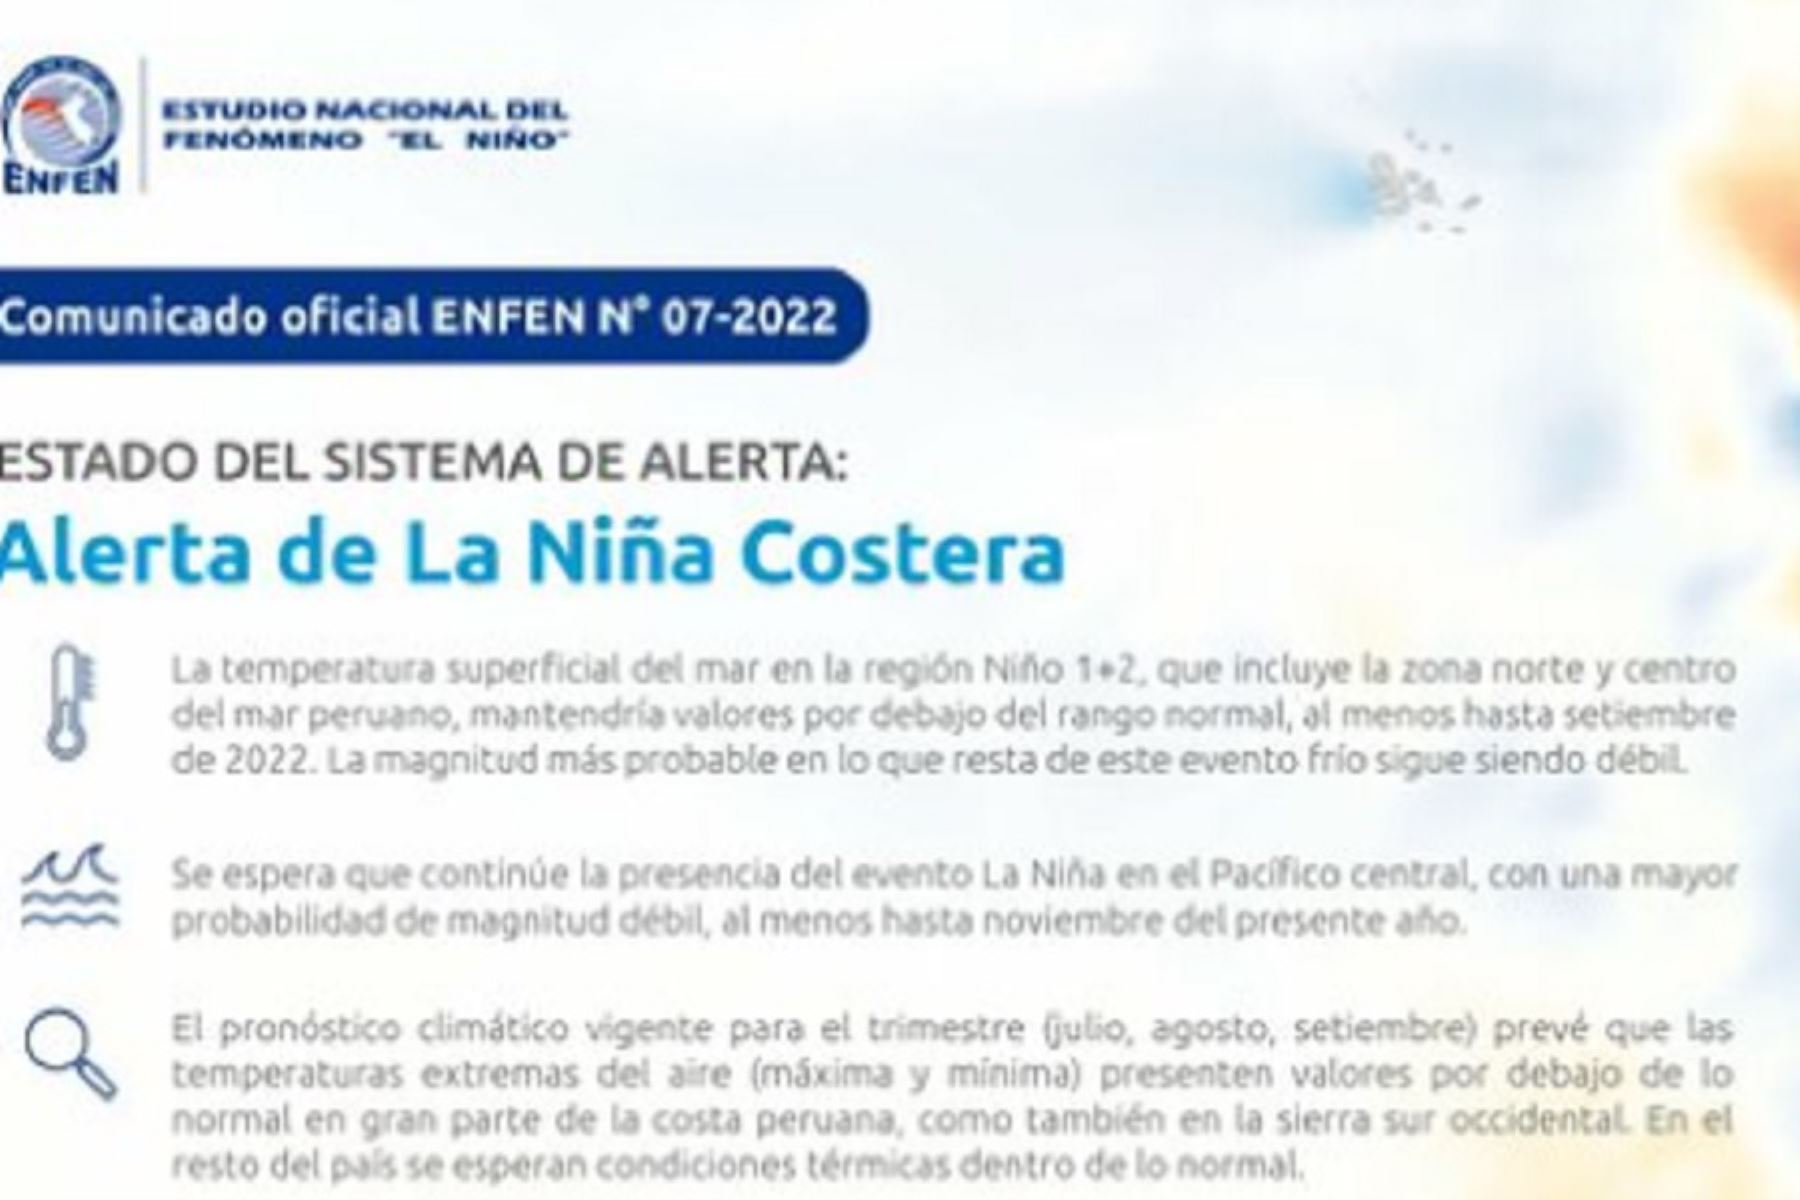 Comisión Multisectorial del ENFEN mantiene estado de alerta de La Niña Costera con magnitud débil hasta setiembre de 2022.